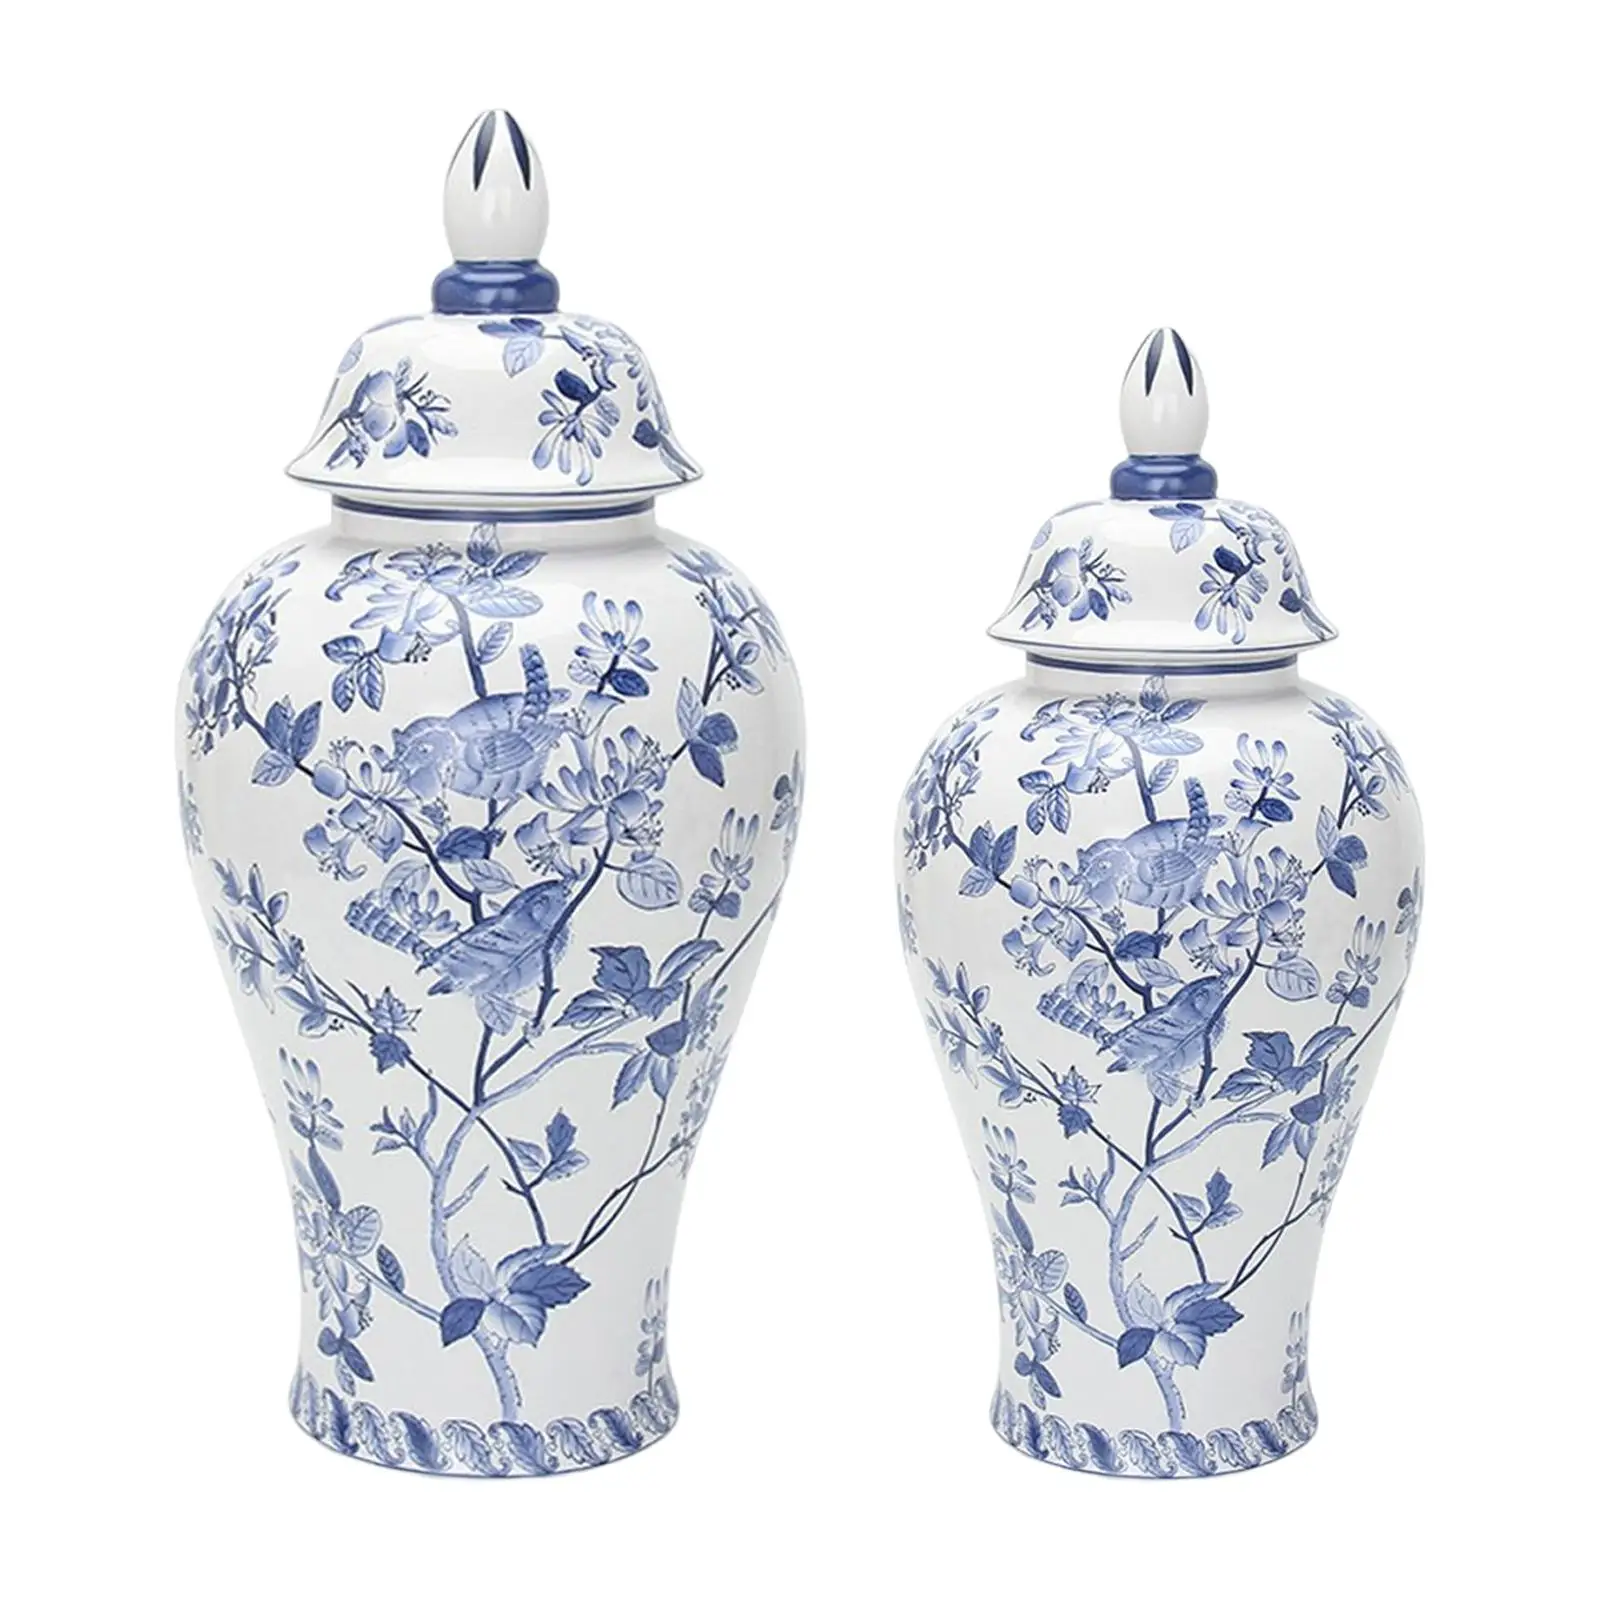 Porcelain Ginger Jar Indoor Plants Holder Ceramic Flower Vase for Weddings